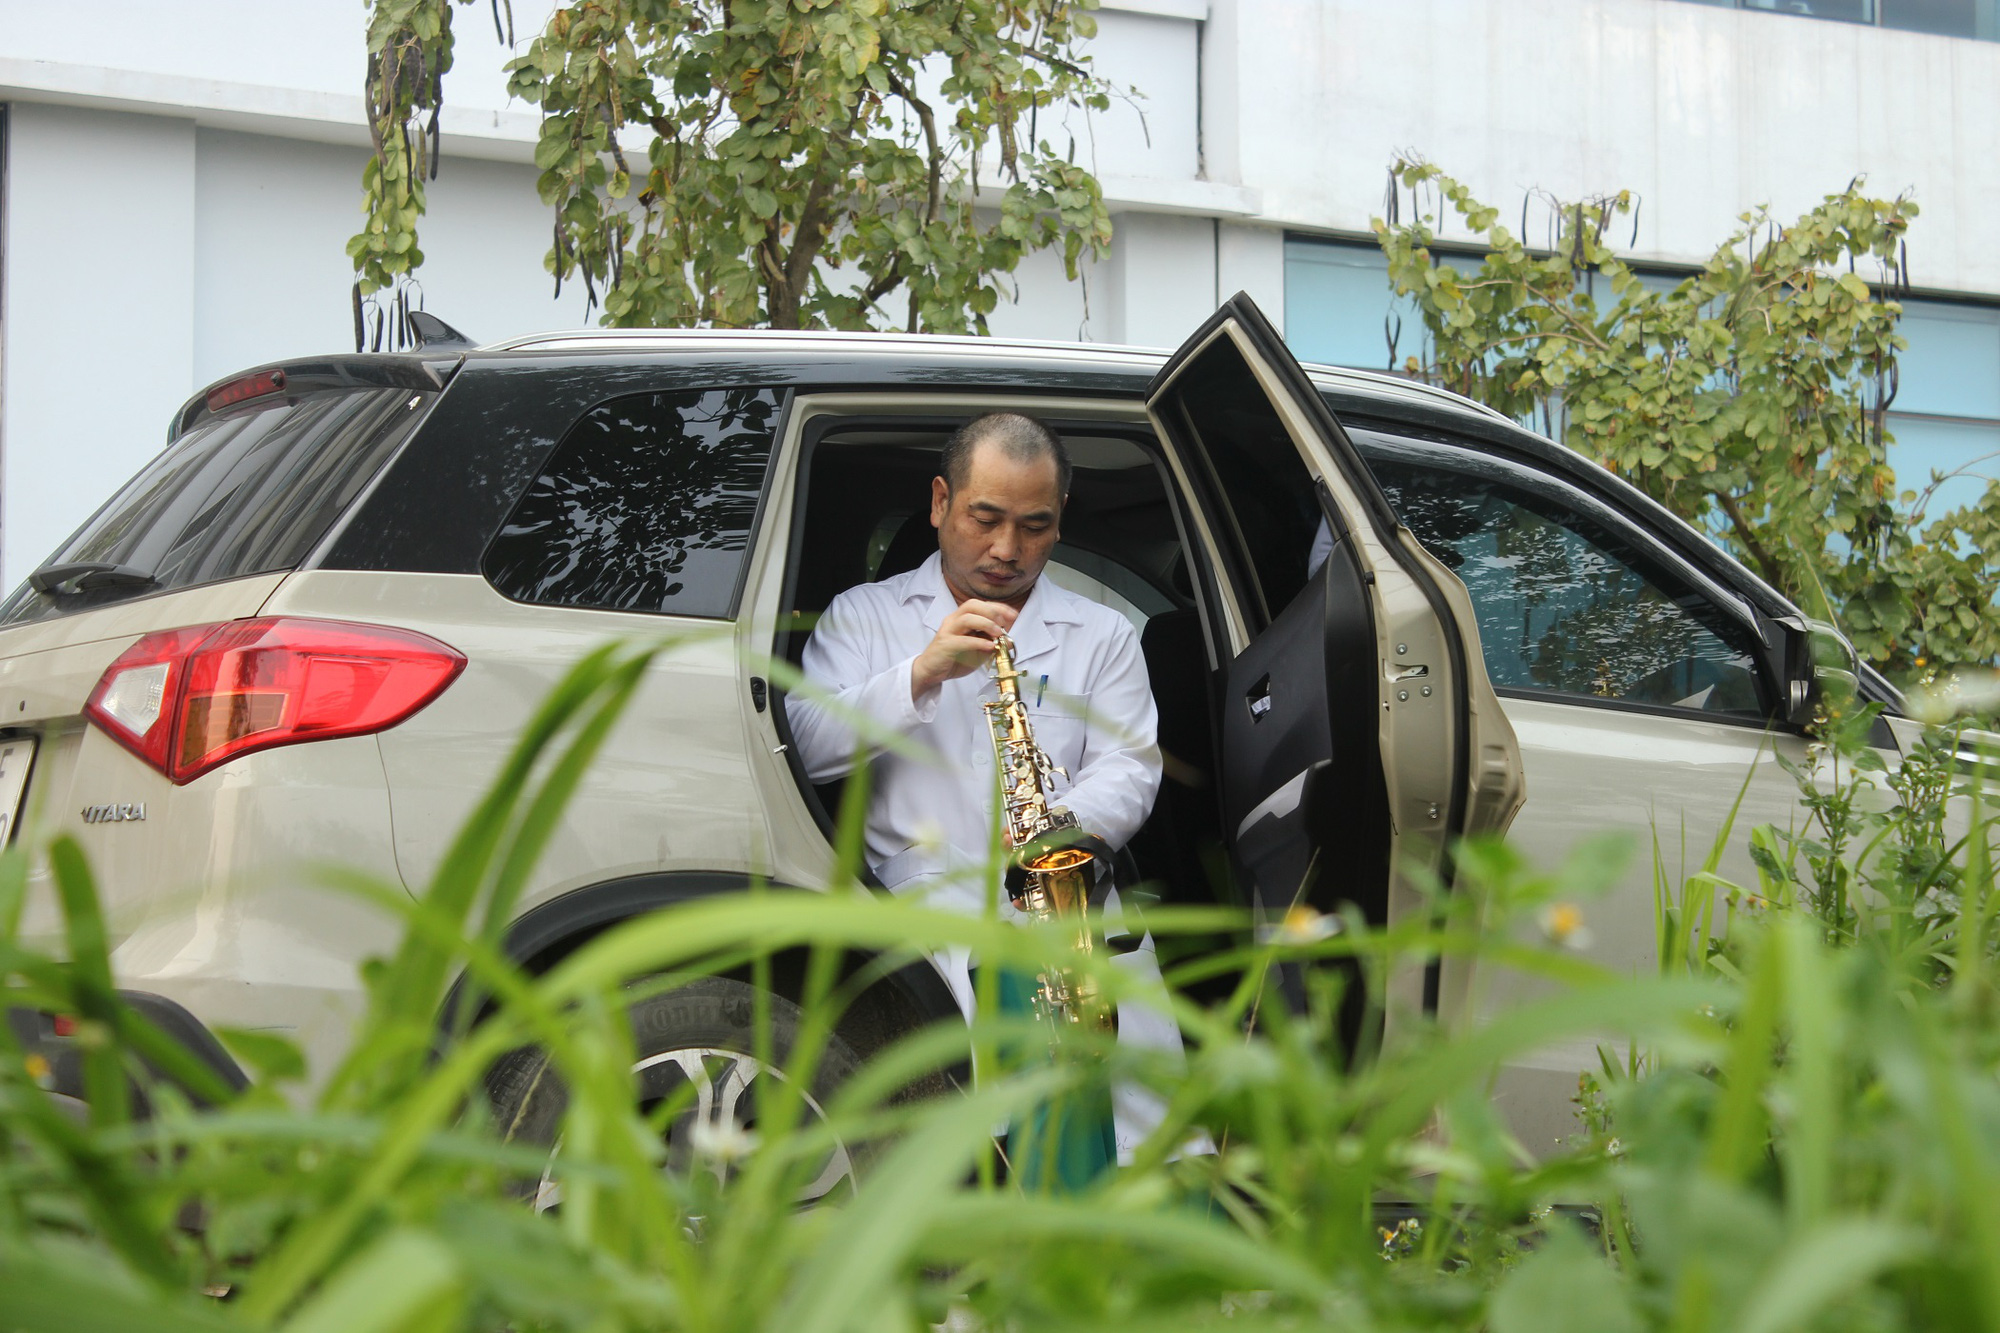 Sau giờ làm việc, bác sĩ Nguyễn Trung Cấp lại ra cánh đồng hoa gần đó hát và học thổi kèn để thư dãn